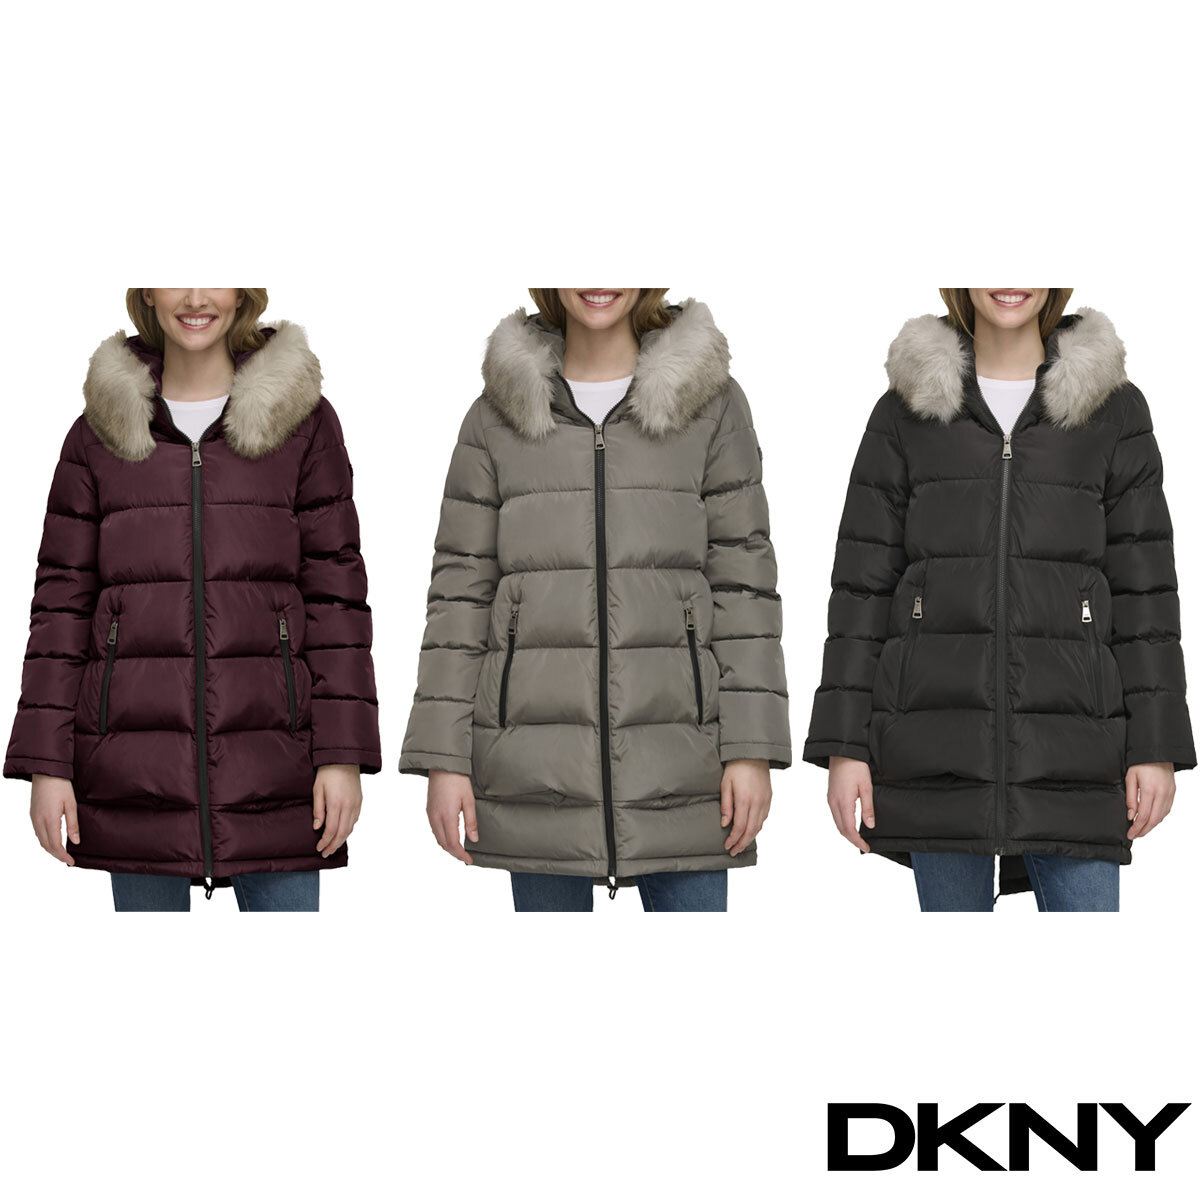 DKNY Women's Clothing